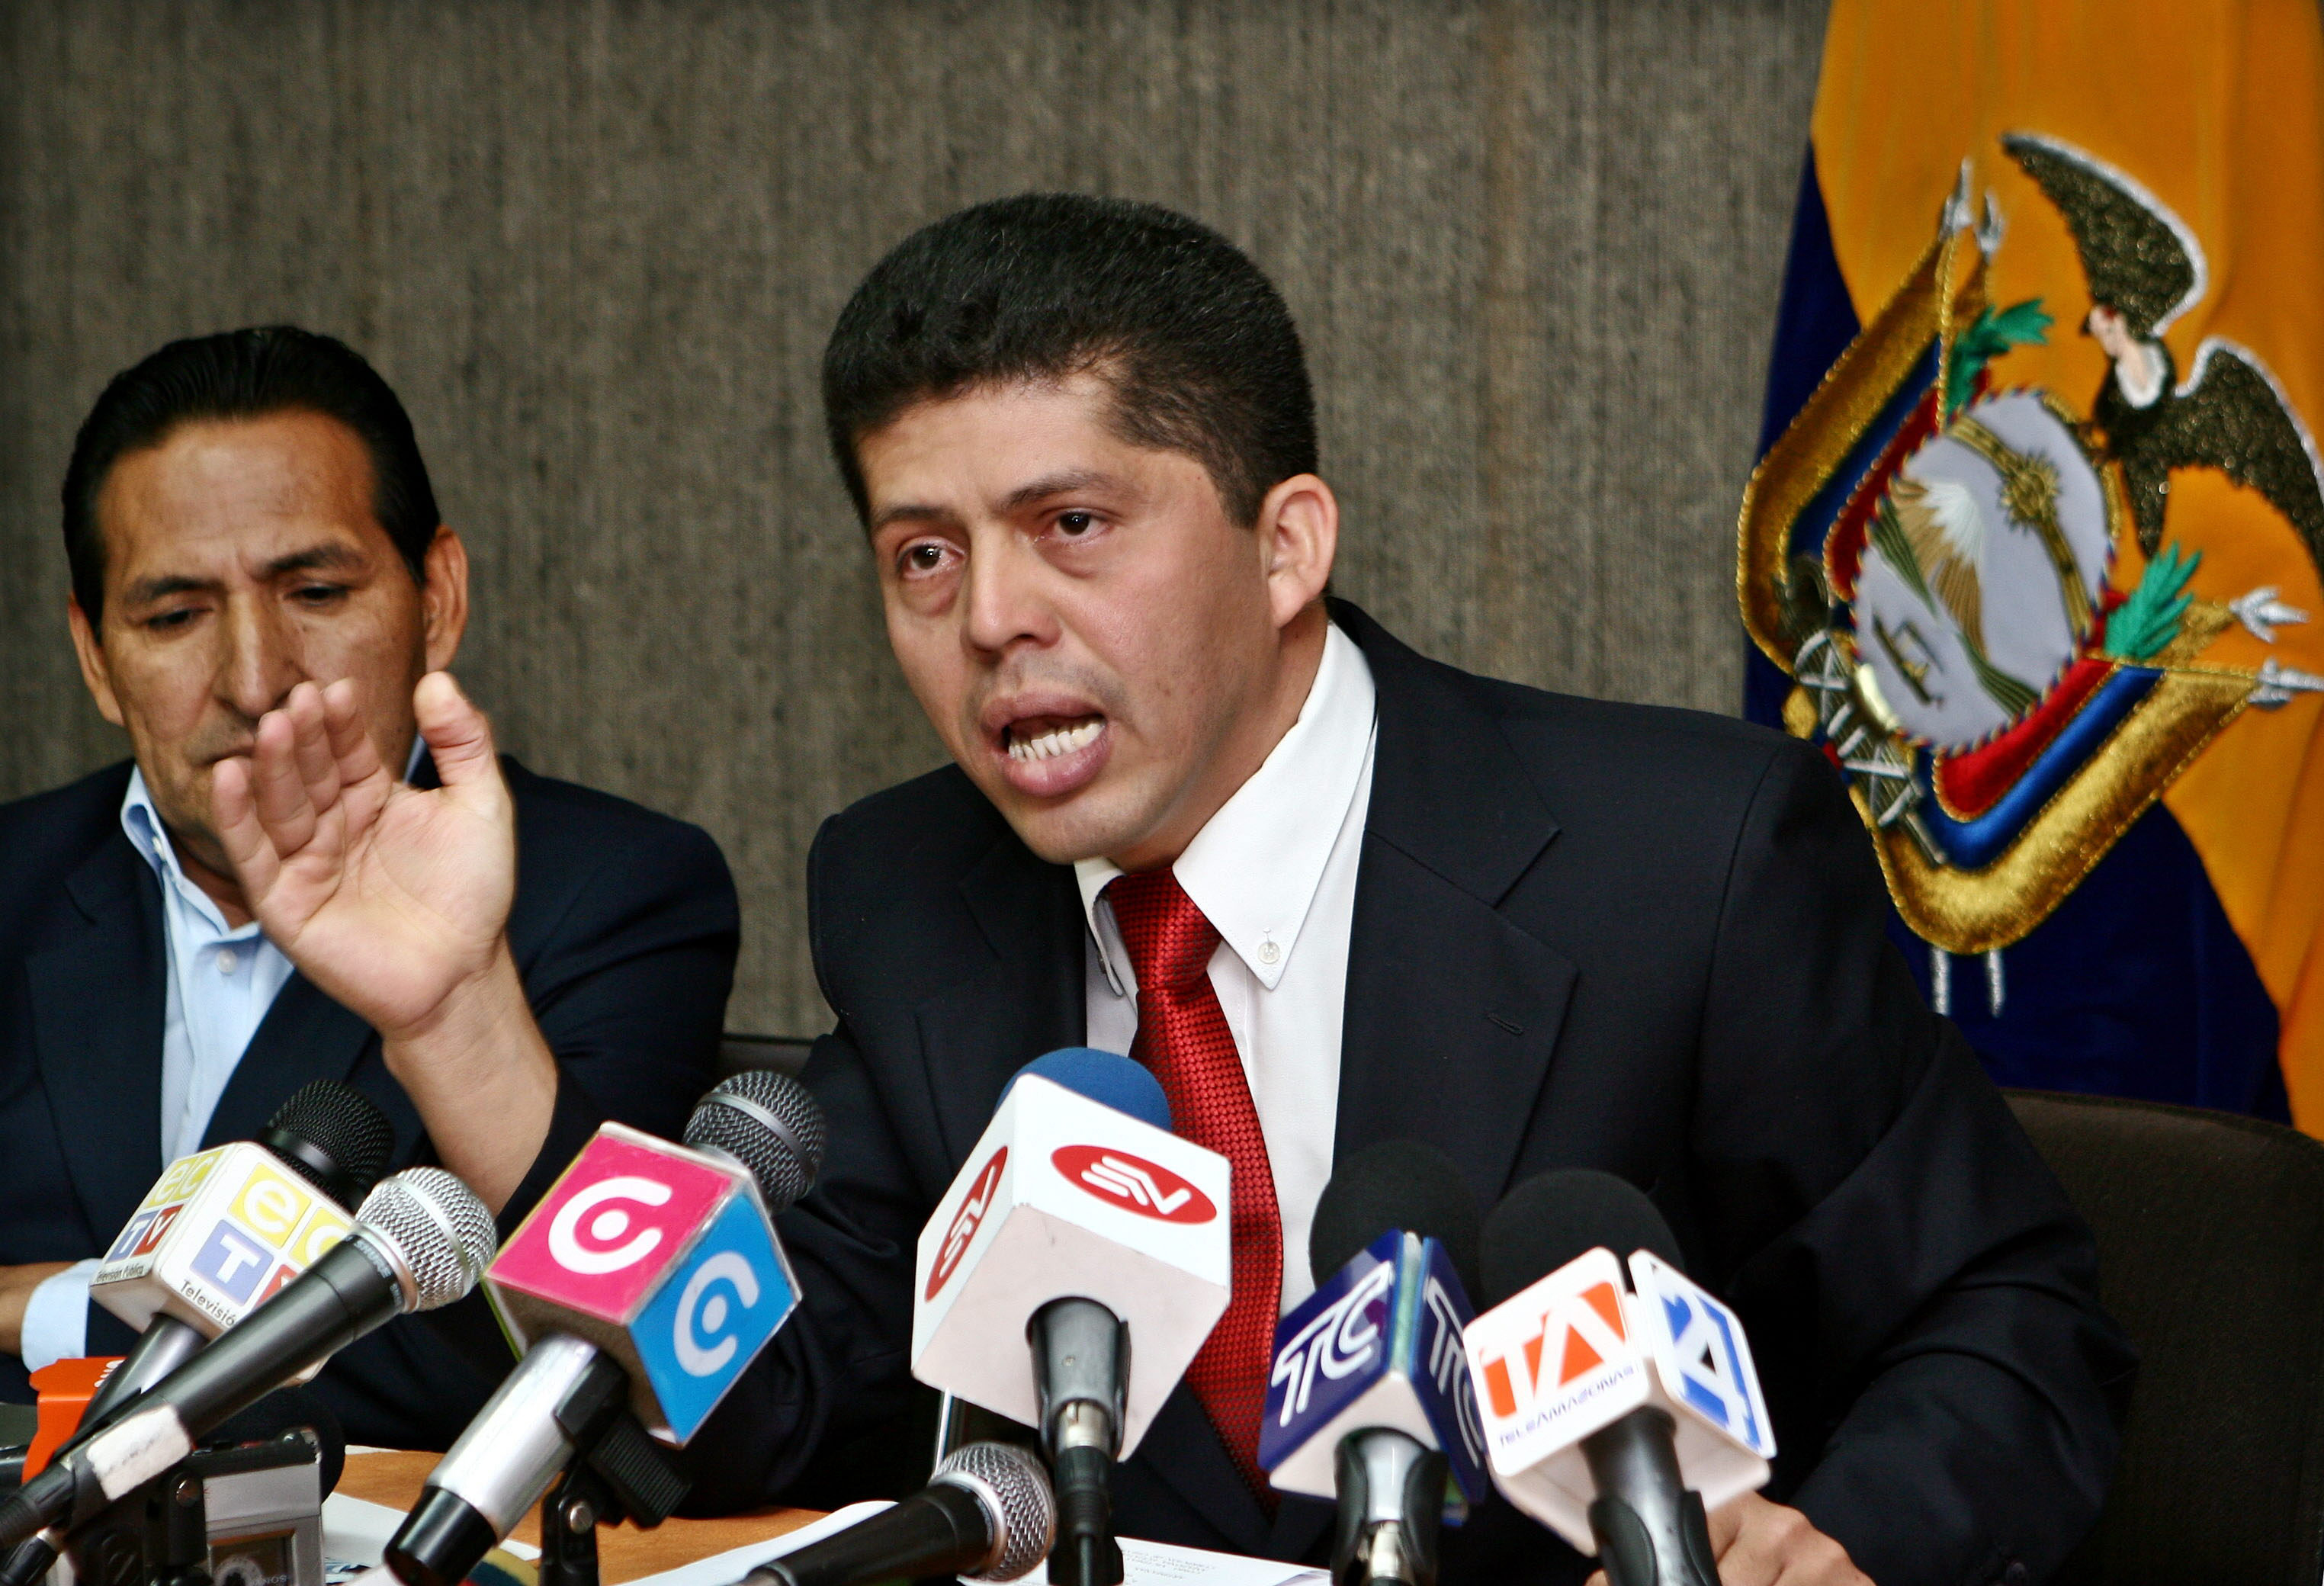 El abogado Pablo Fajardo fue quien anunció este viernes el fallo a favor el caso Chevron Texaco.